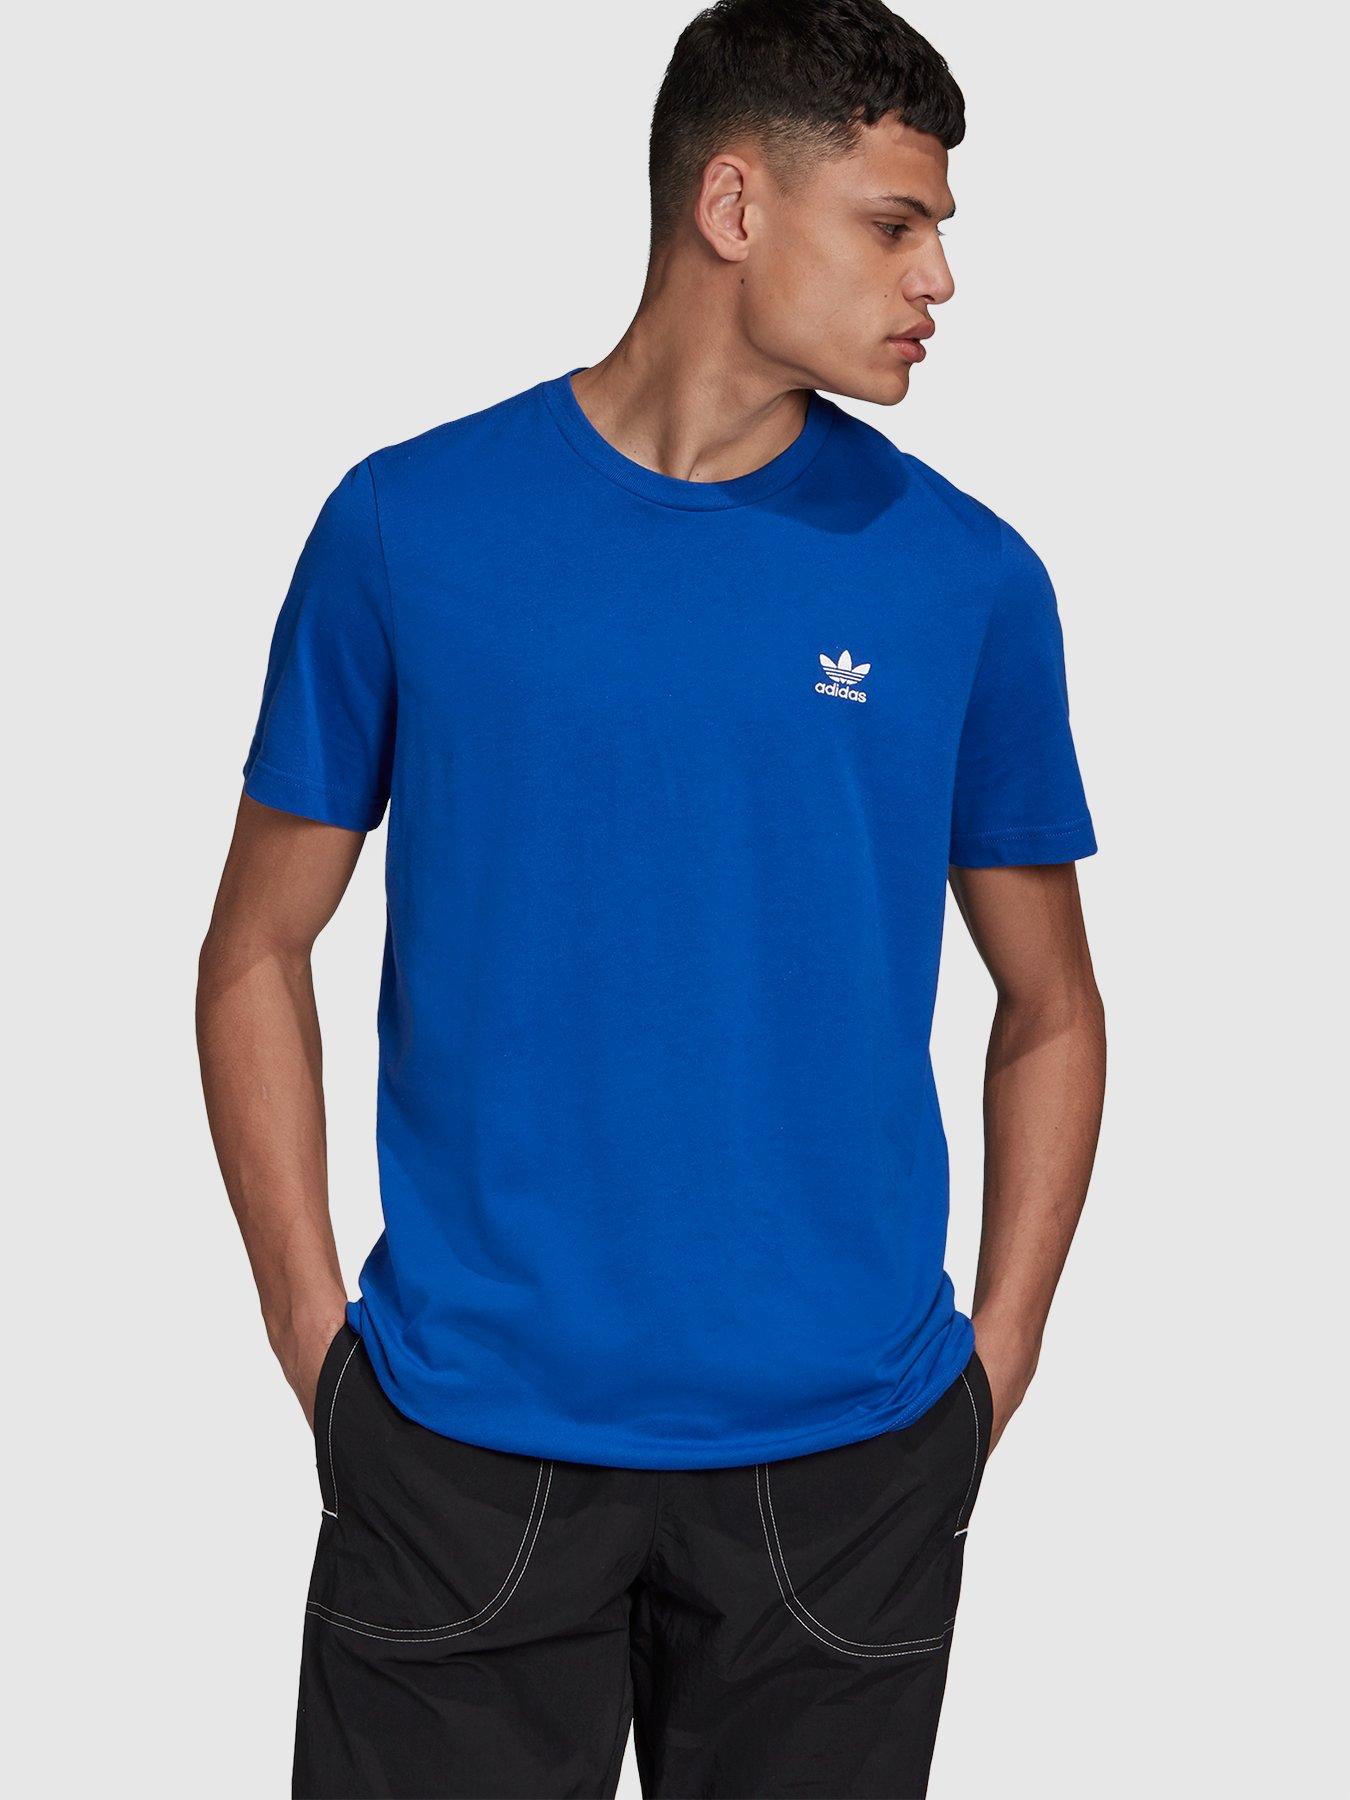 adidas original blue t shirt